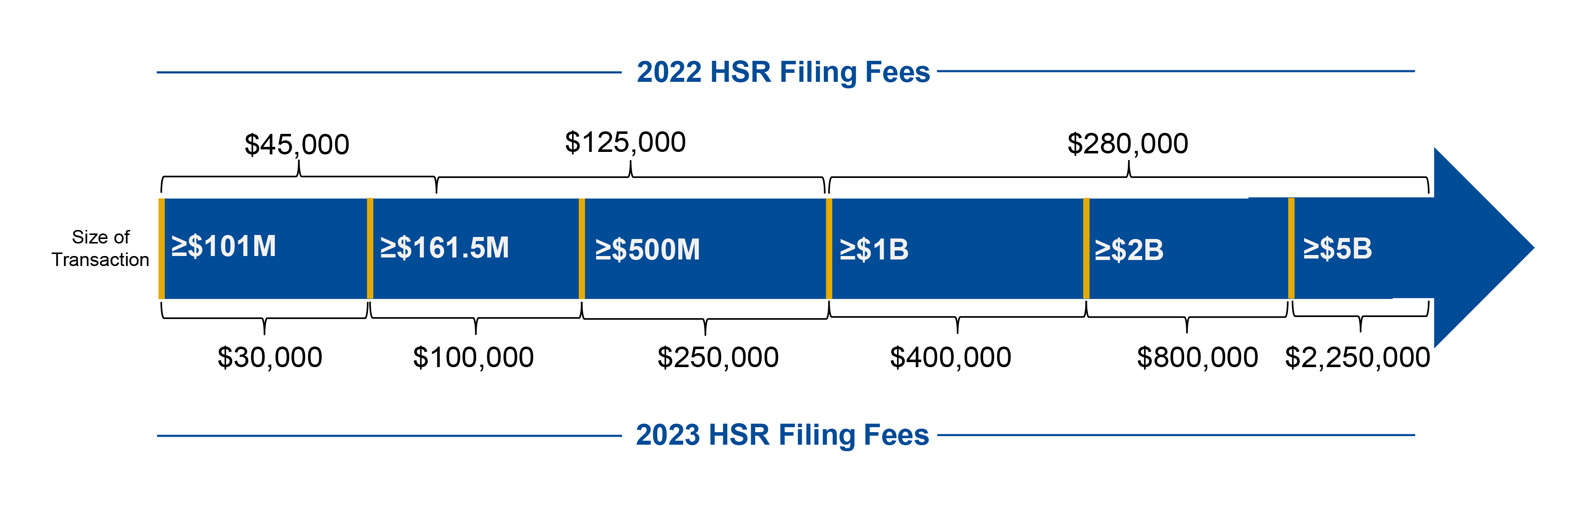 A chart of 2022 HSR Filing Fees